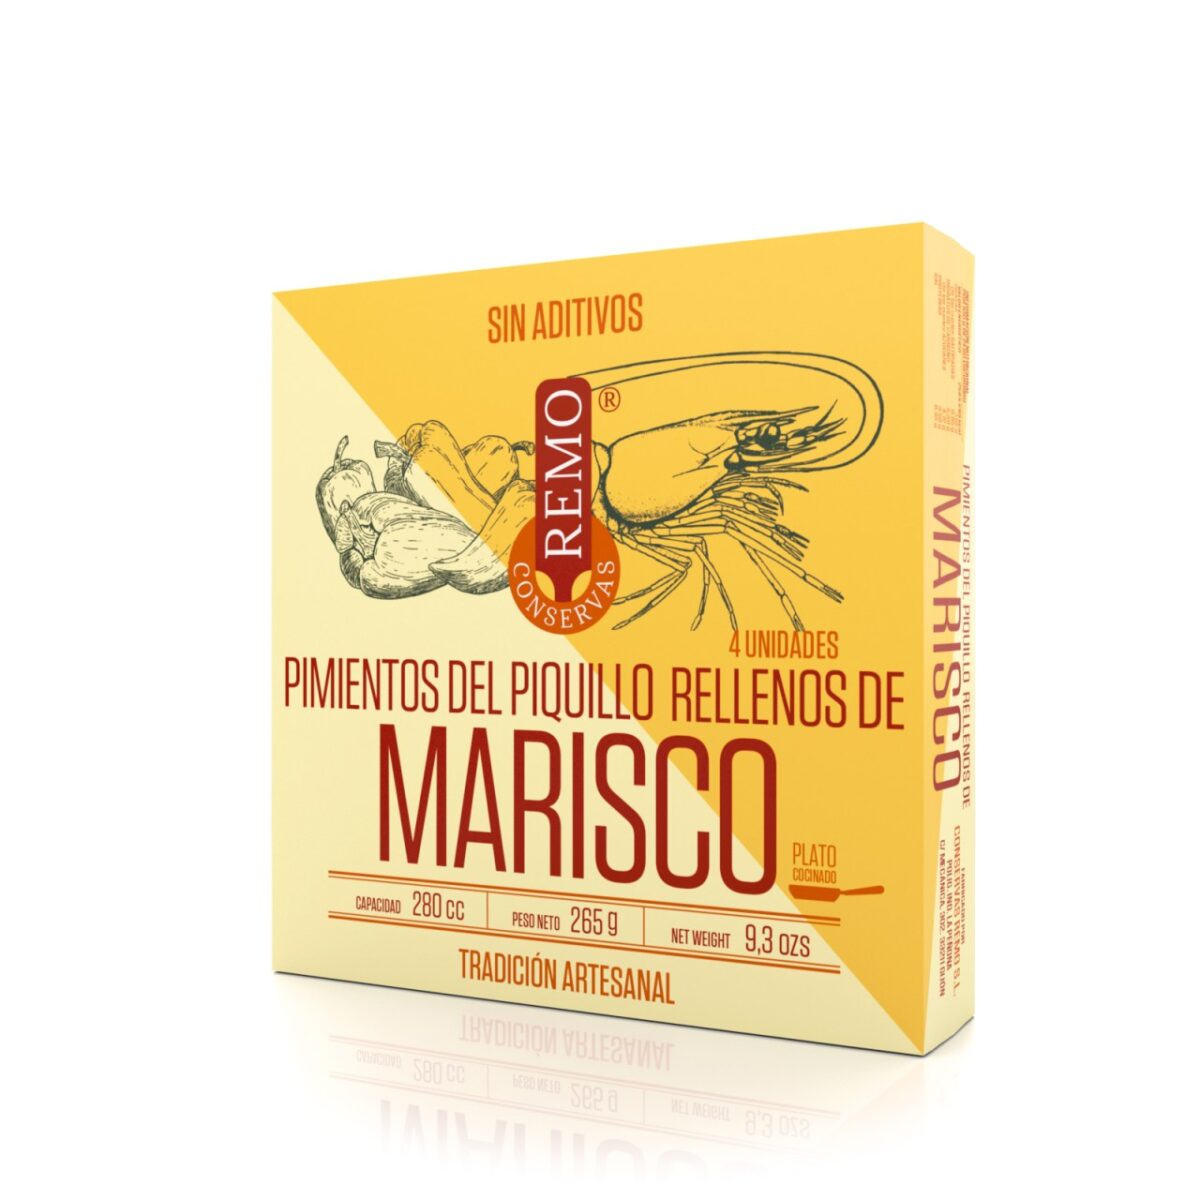 Pimientos del Piquillo rellenos de Marisco de Conservas Remo, Gorfolí tienda online de productos gourmet asturianos